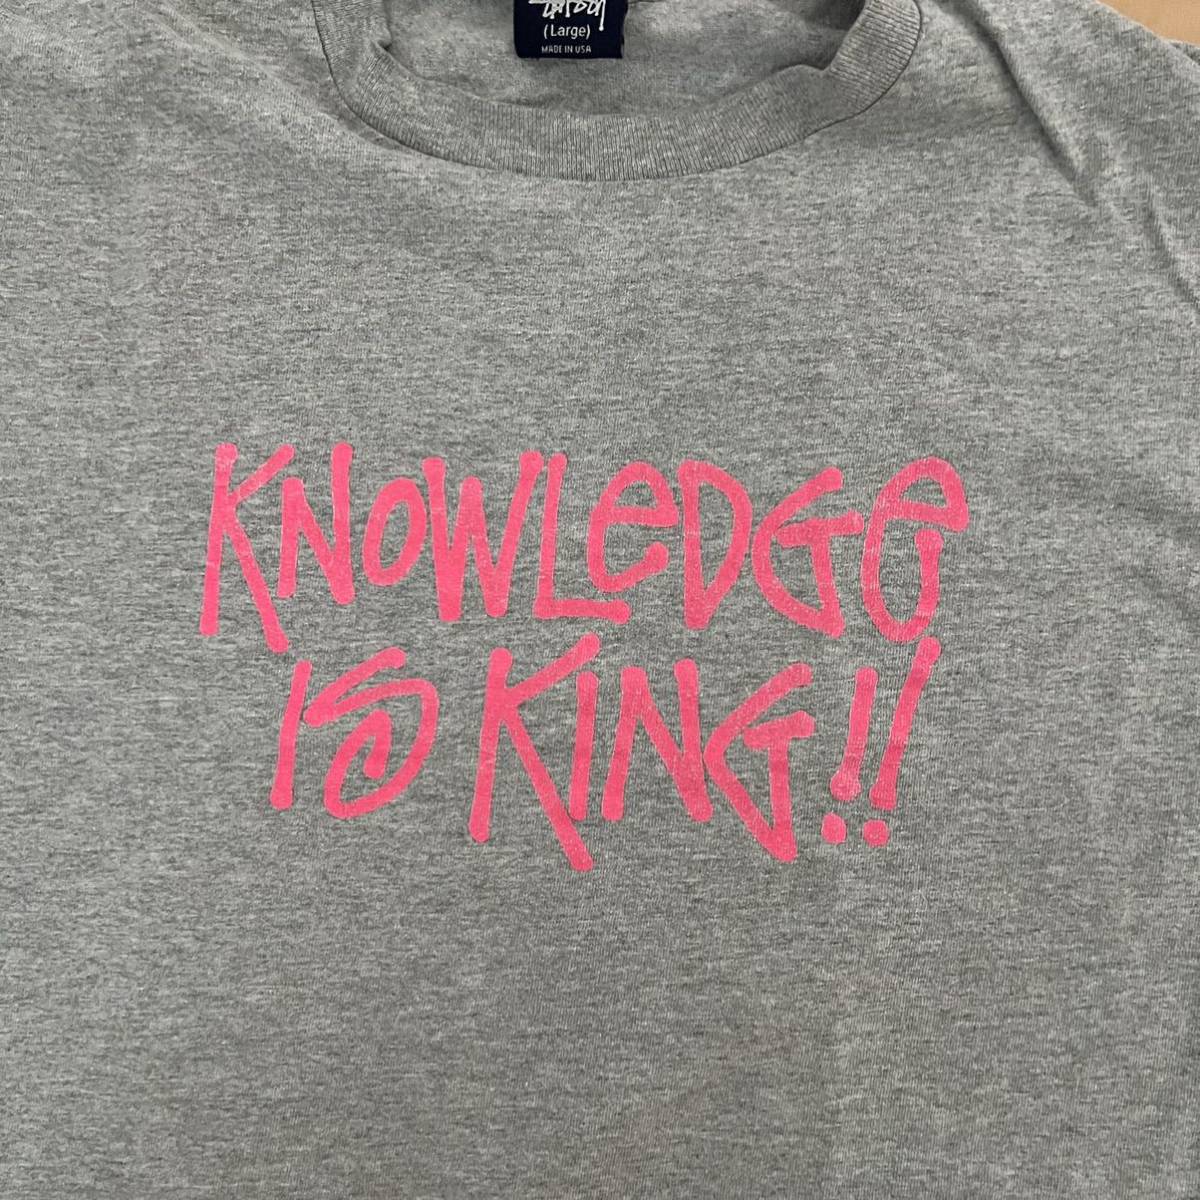 激レア90'sビンテージ オールドステューシー knowledge is king Tシャツ グレイ サイズL MADE IN USA 美品格安!_画像3